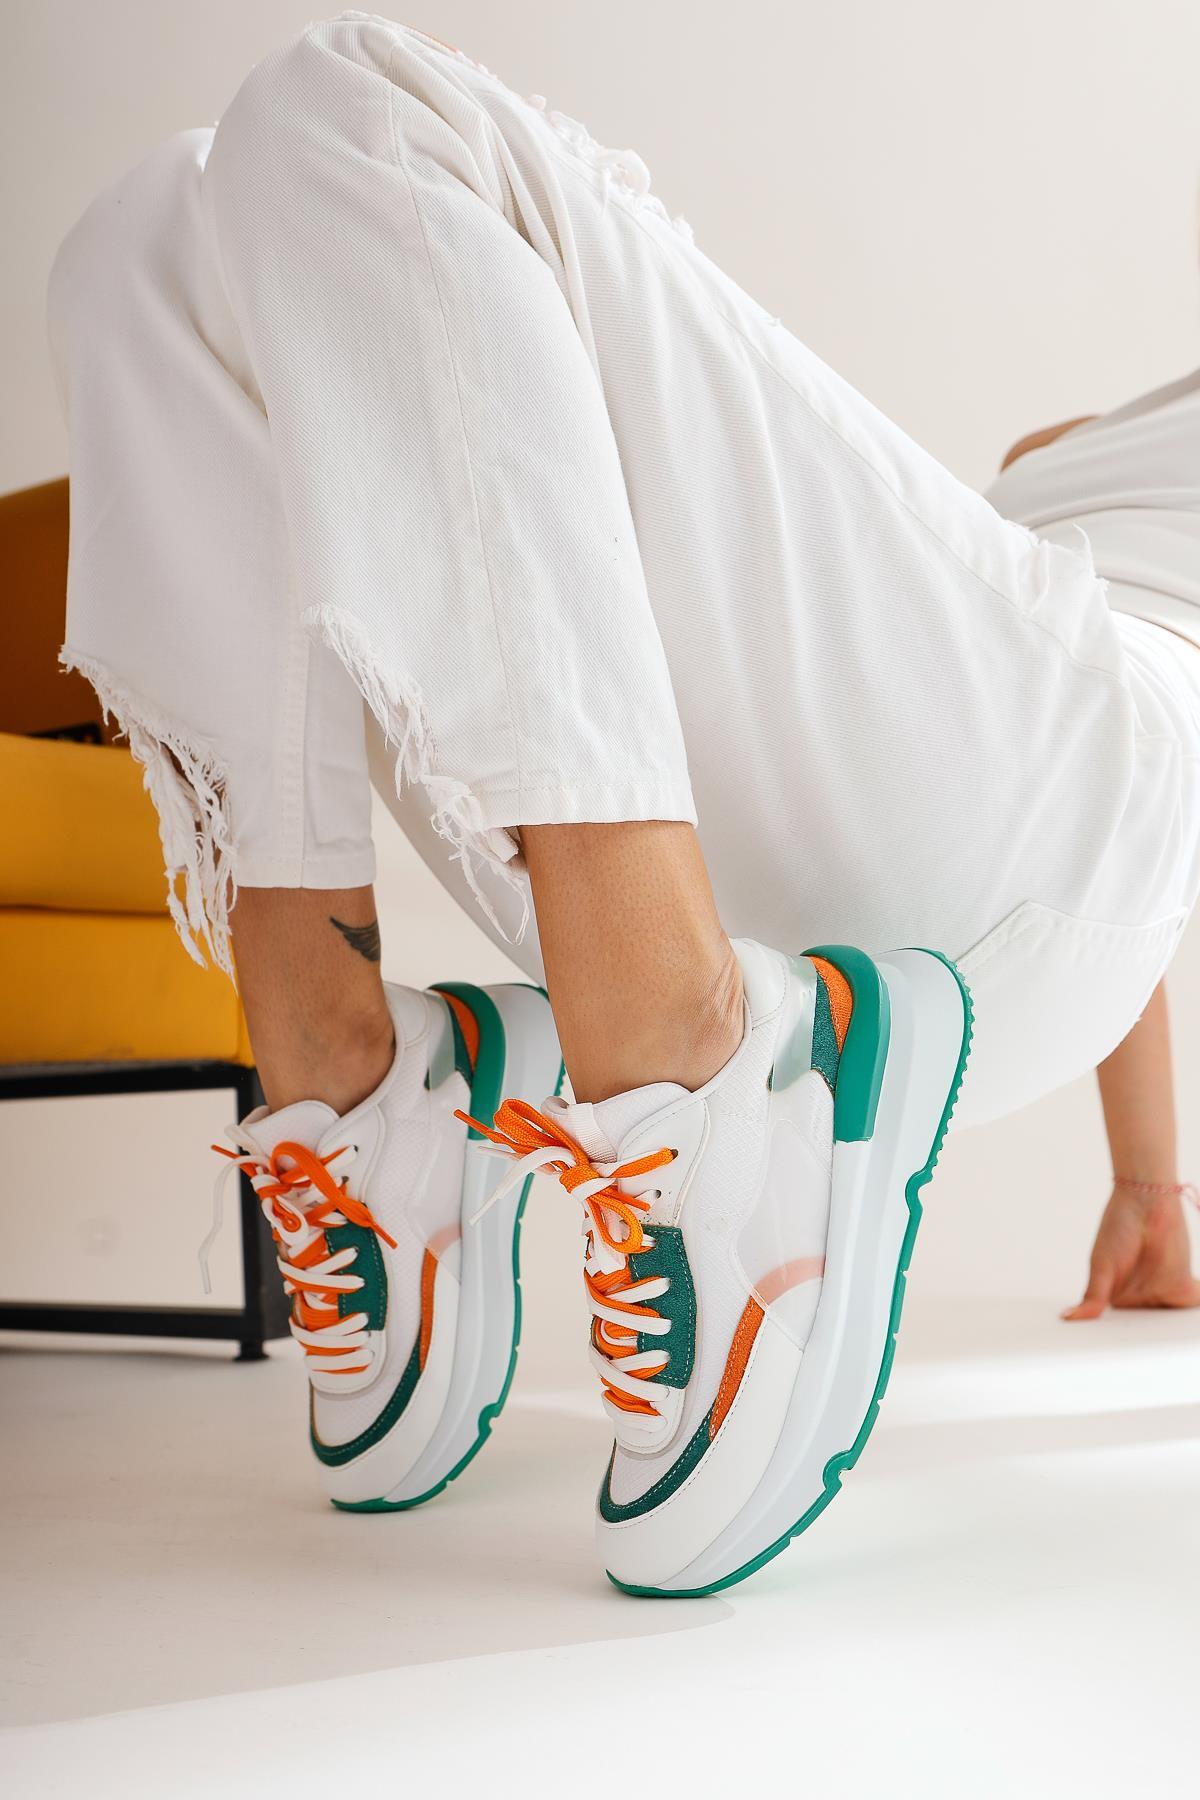 Luam Beyaz Yeşil Sneakers Spor Ayakkabı